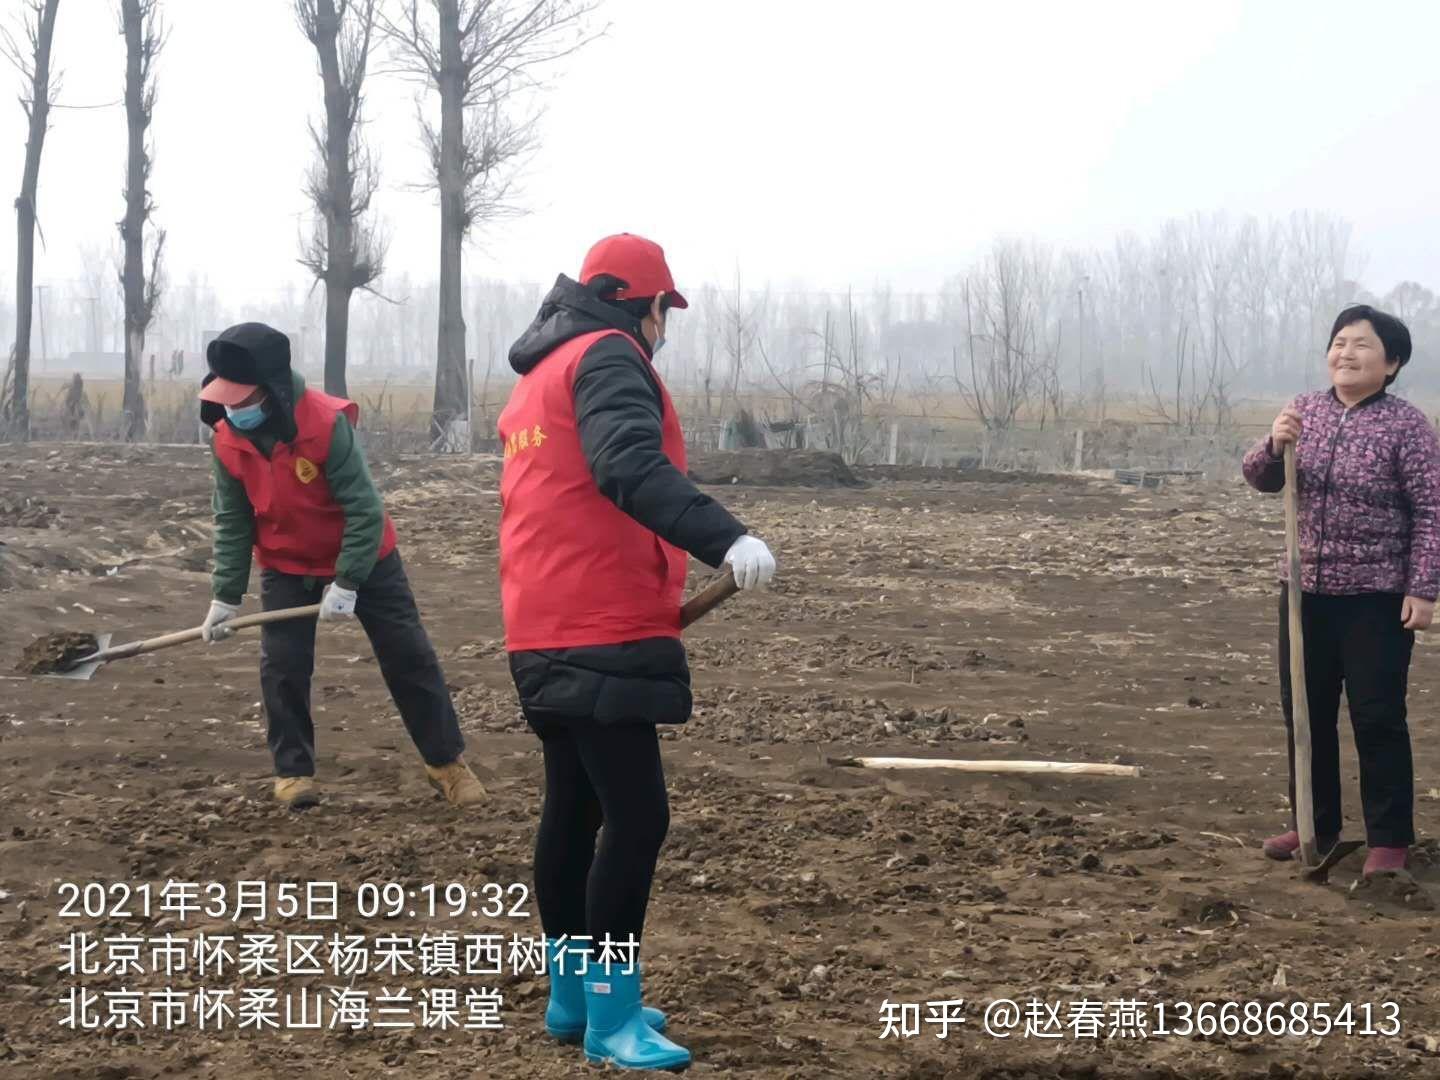 其中在北京怀柔杨宋镇西树行村执勤的志愿者们,早早的来到村里,再上岗